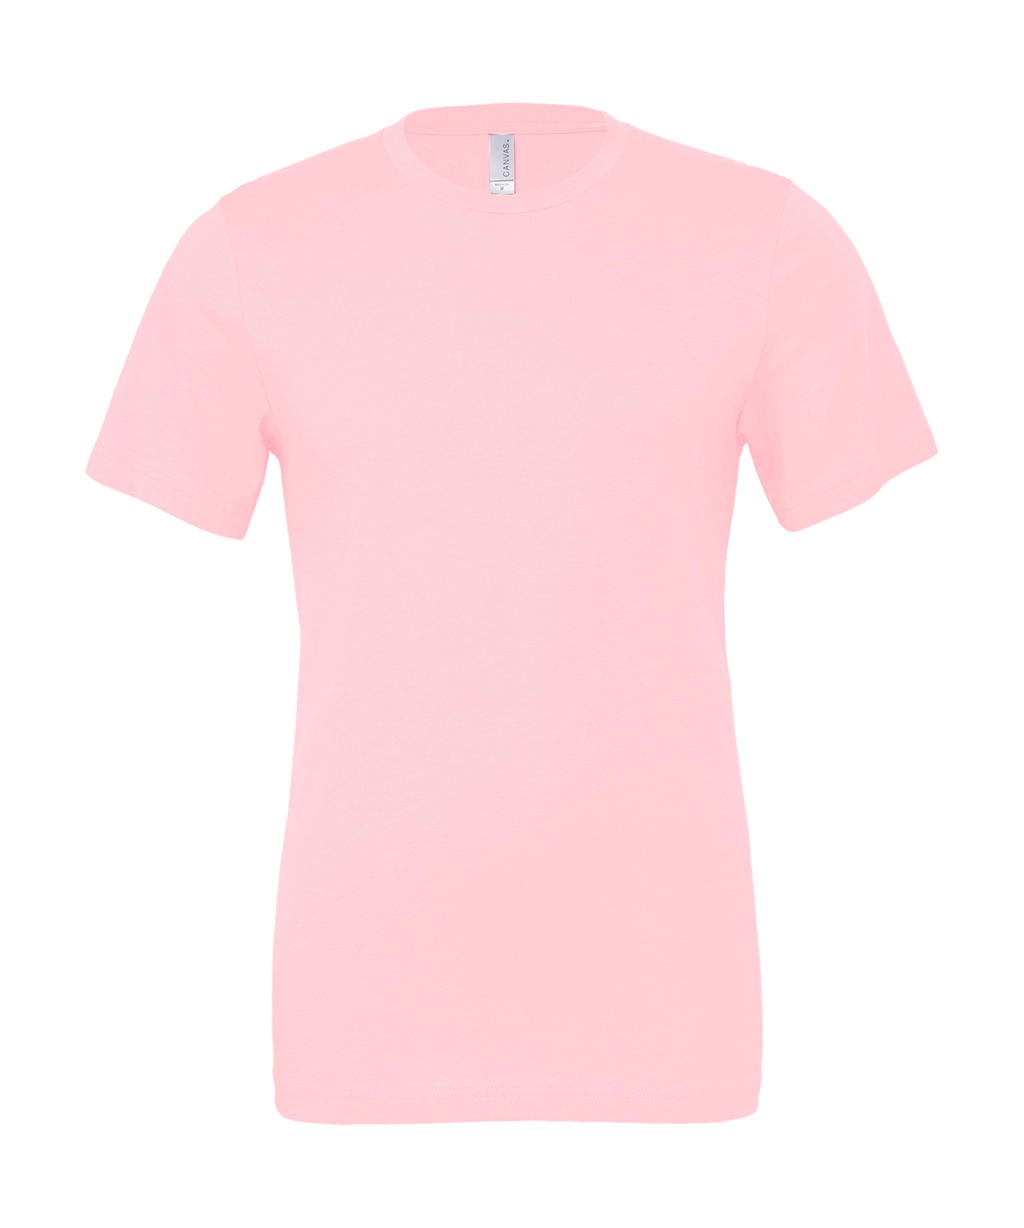 Unisex Jersey Short Sleeve Tee zum Besticken und Bedrucken in der Farbe Pink mit Ihren Logo, Schriftzug oder Motiv.